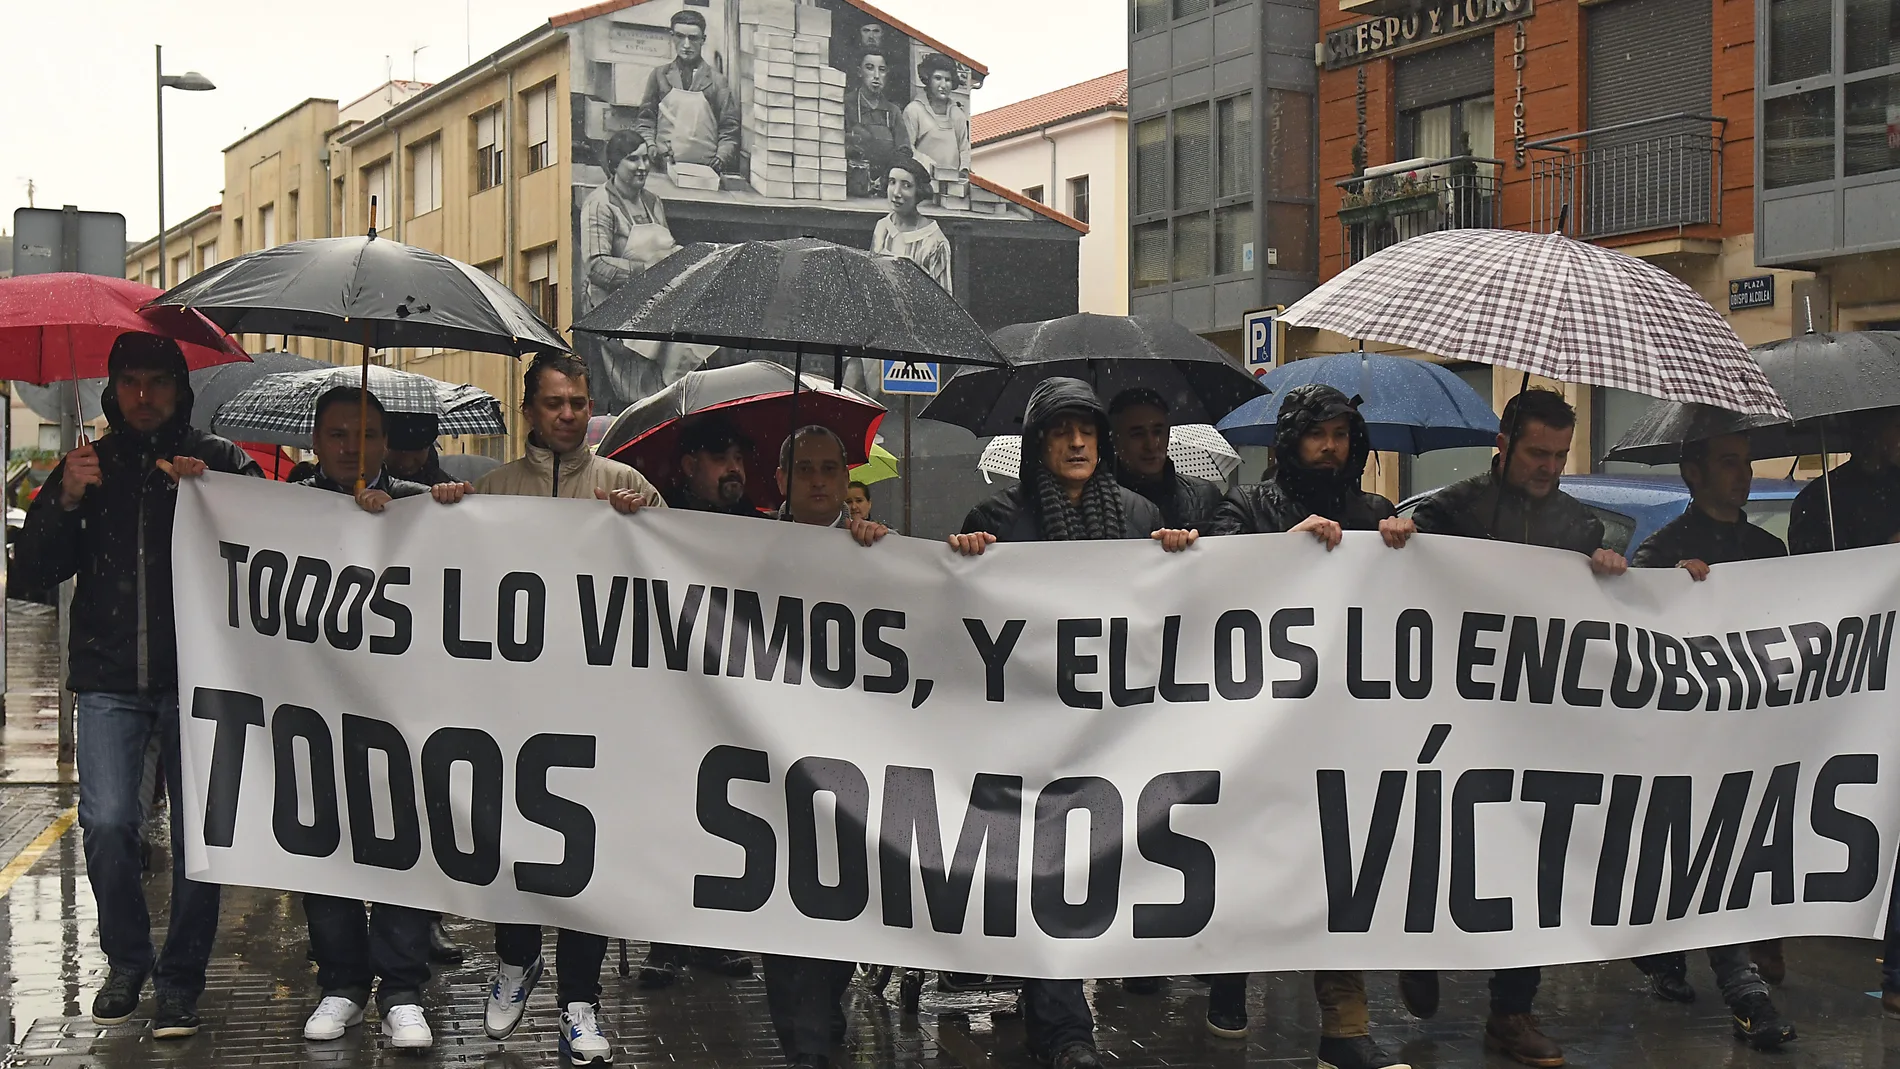 Manifestación en Astorga contra la pederastia en seminarios de curas